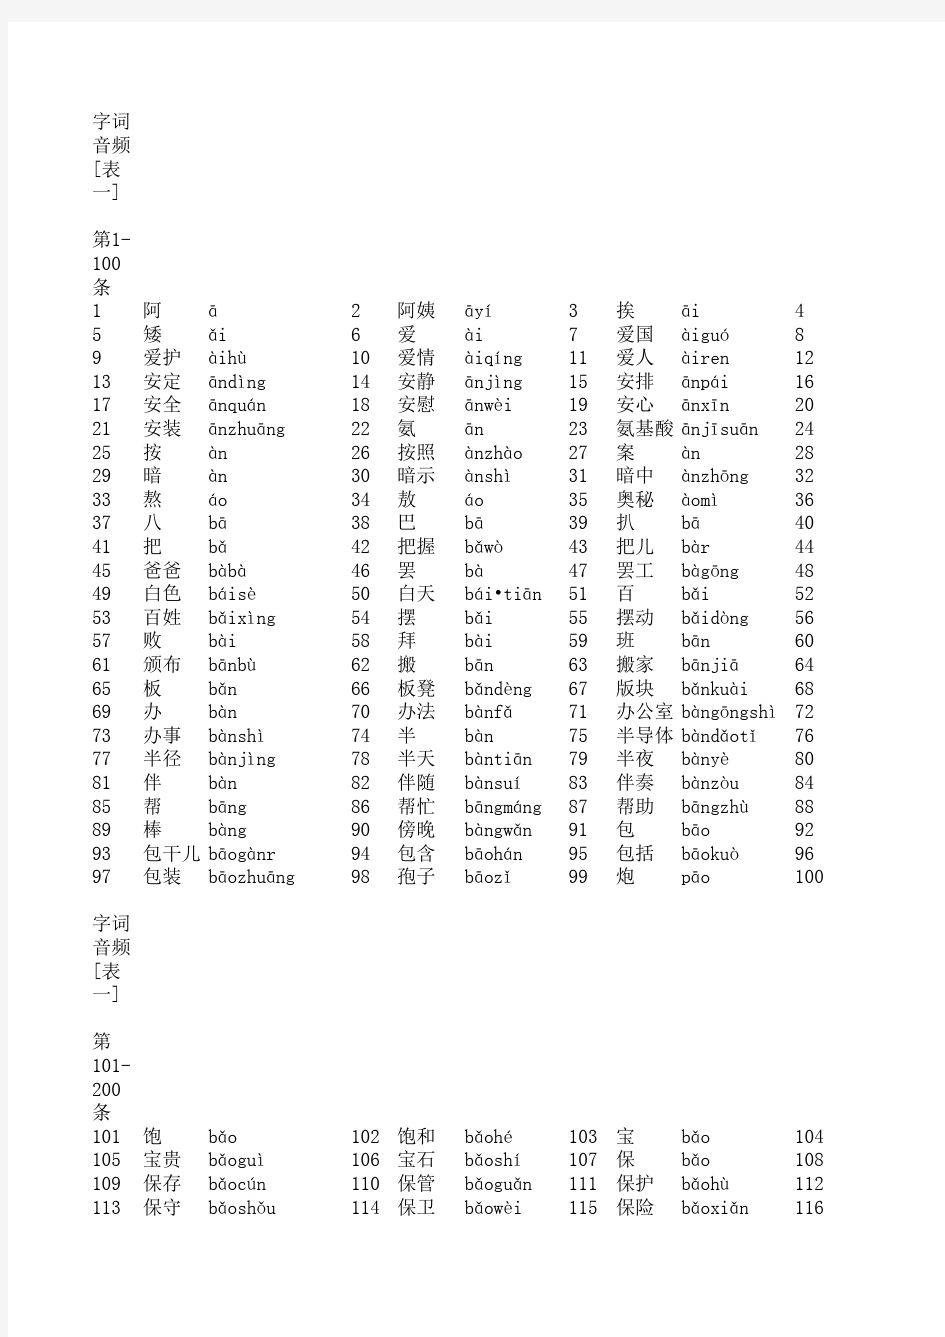 普通话水平测试用普通话词语表 (表一+表二)